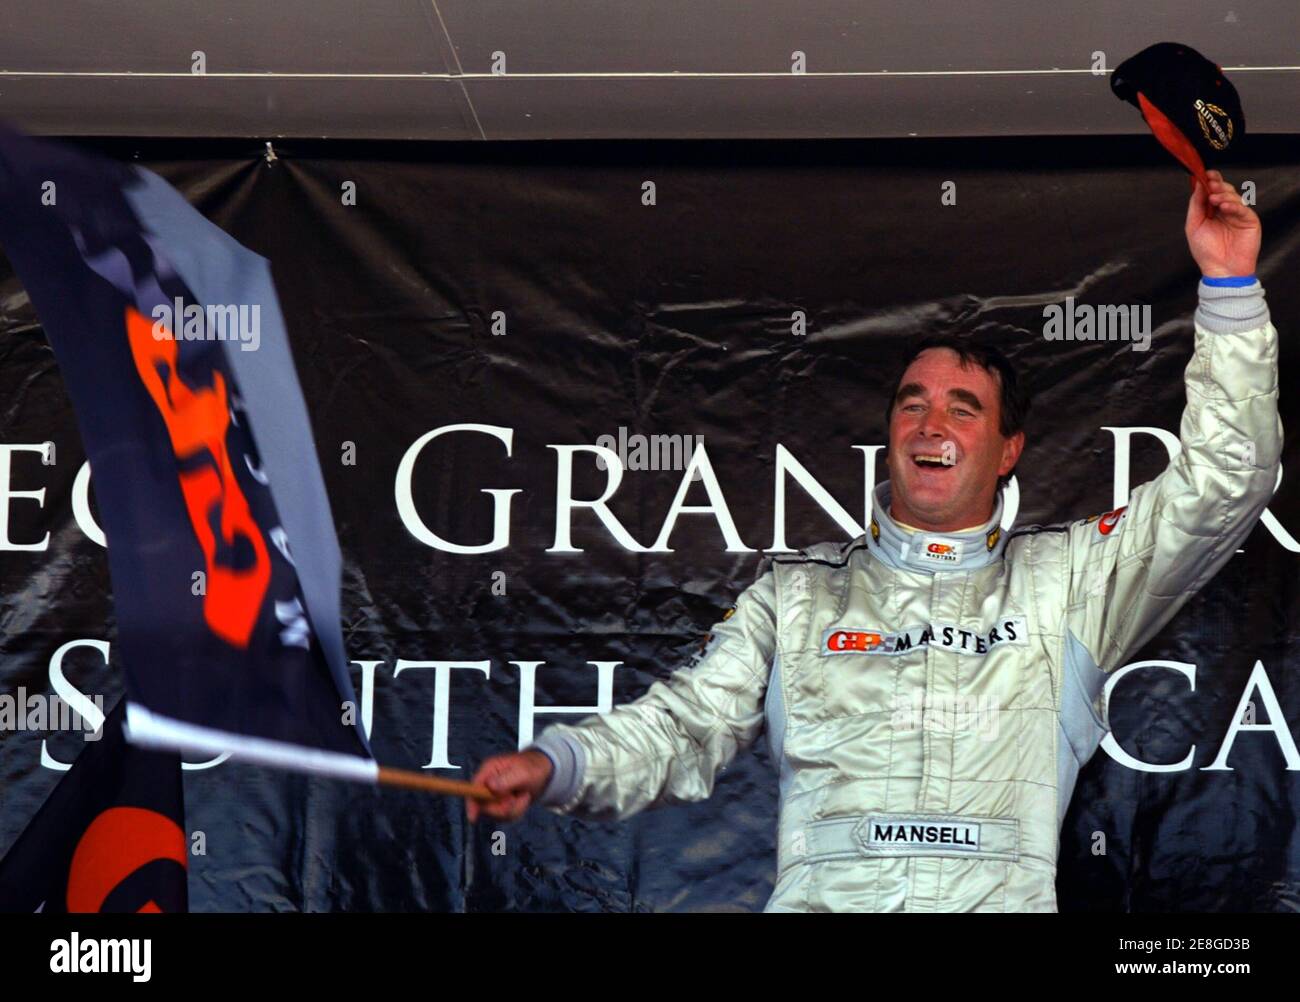 Brite Nigel Mansell feiert nach dem Sieg beim Grand Prix Masters Rennen auf der Rennstrecke Kyalami in der Nähe von Johannesburg 13. November 2005. Mansell, 52, führte die 30-Runden-Rennen von Anfang bis Ende und wehrte die Herausforderung von Brasiliens Emerson Fittipaldi, um weniger als eine halbe Sekunde zu gewinnen. REUTERS/Juda Ngwenya Stockfoto